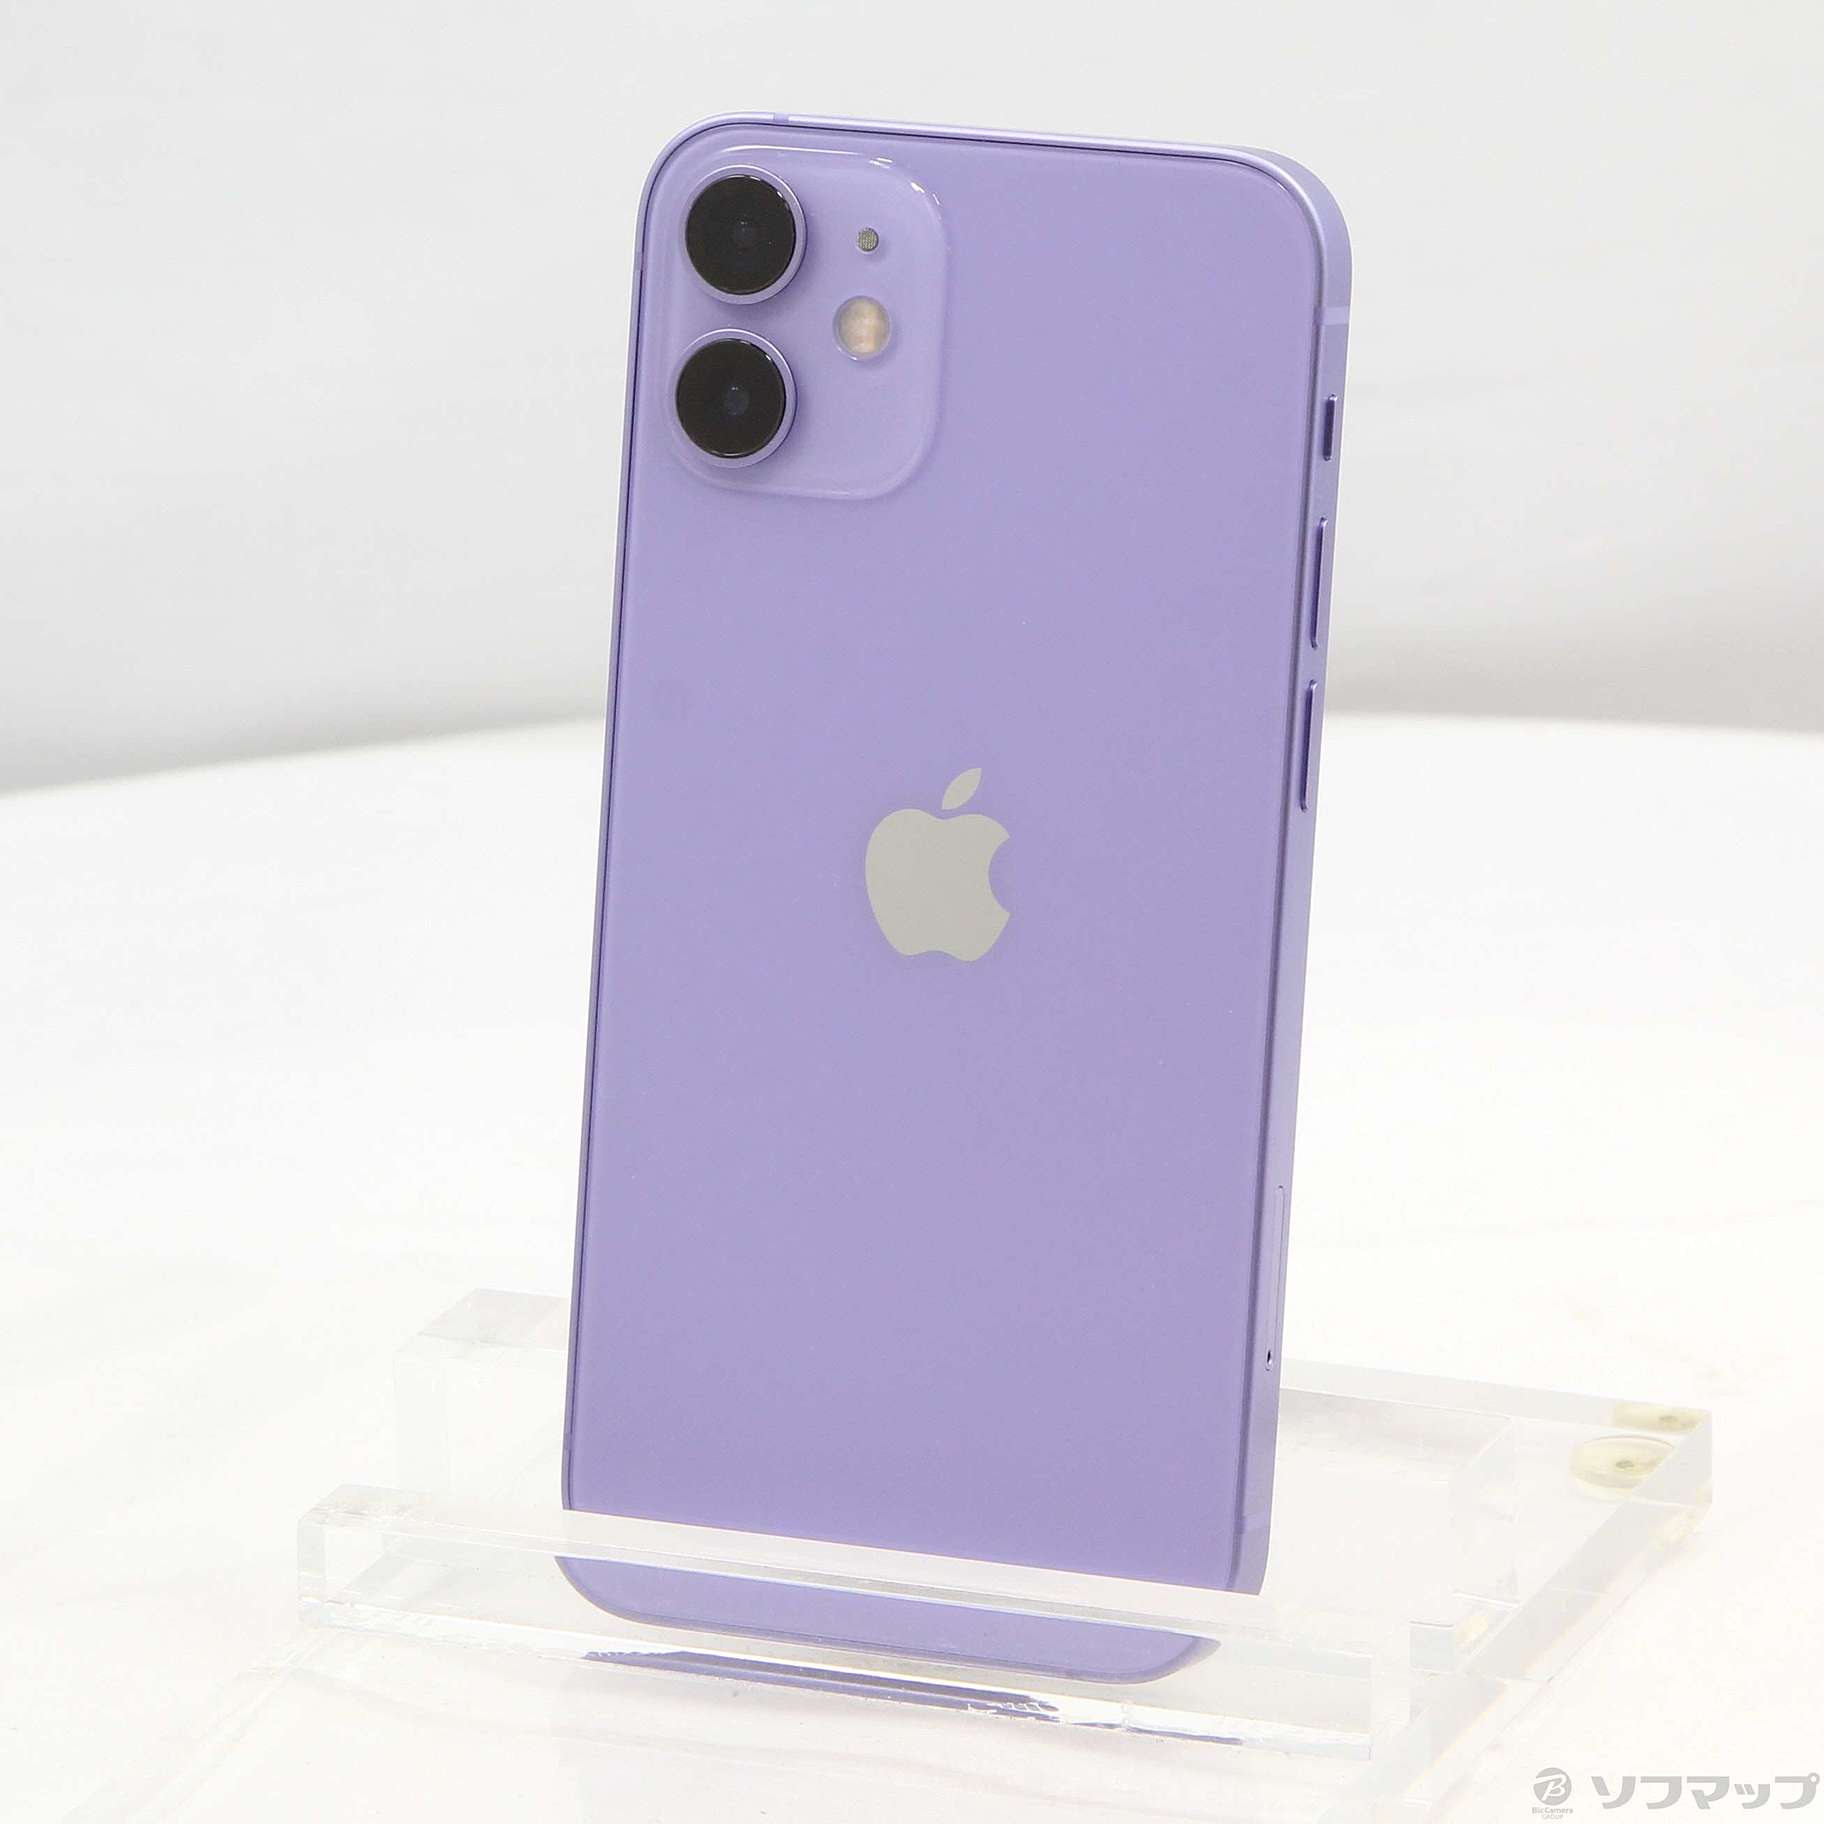 iPhone12 mini 128GB purple